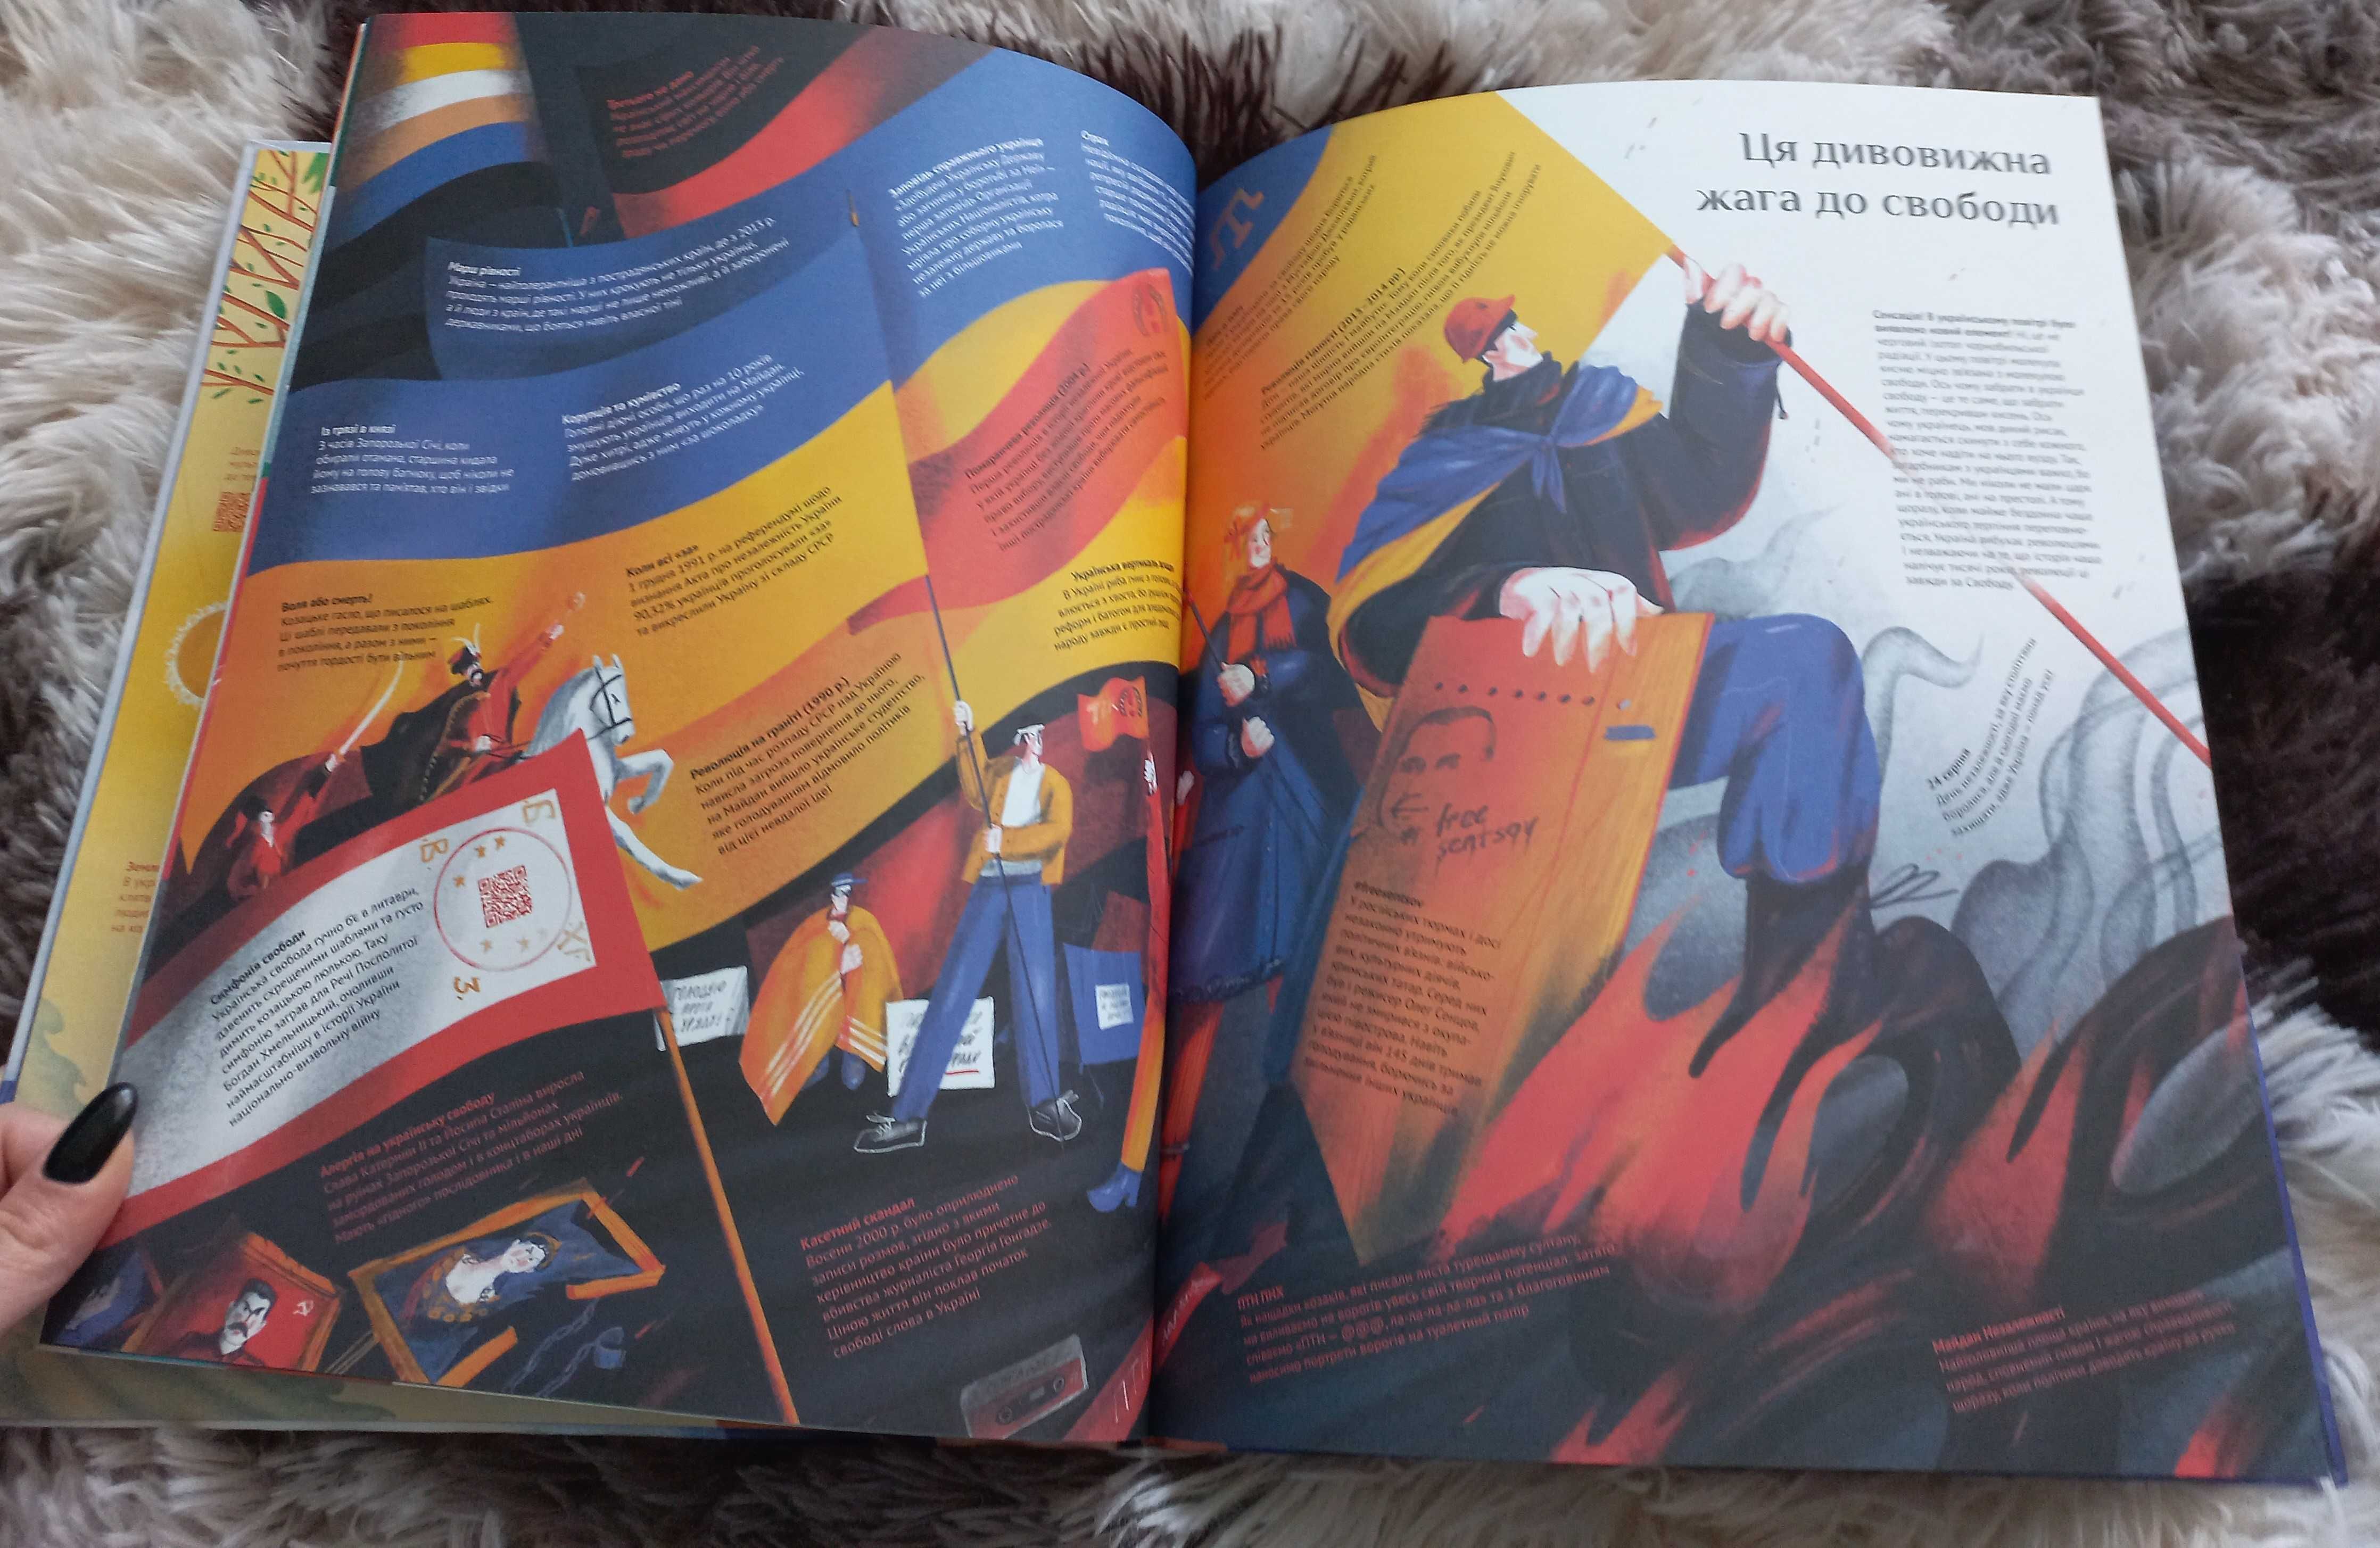 Книга-мандрівка Україна. "Ці дивовижні українці"